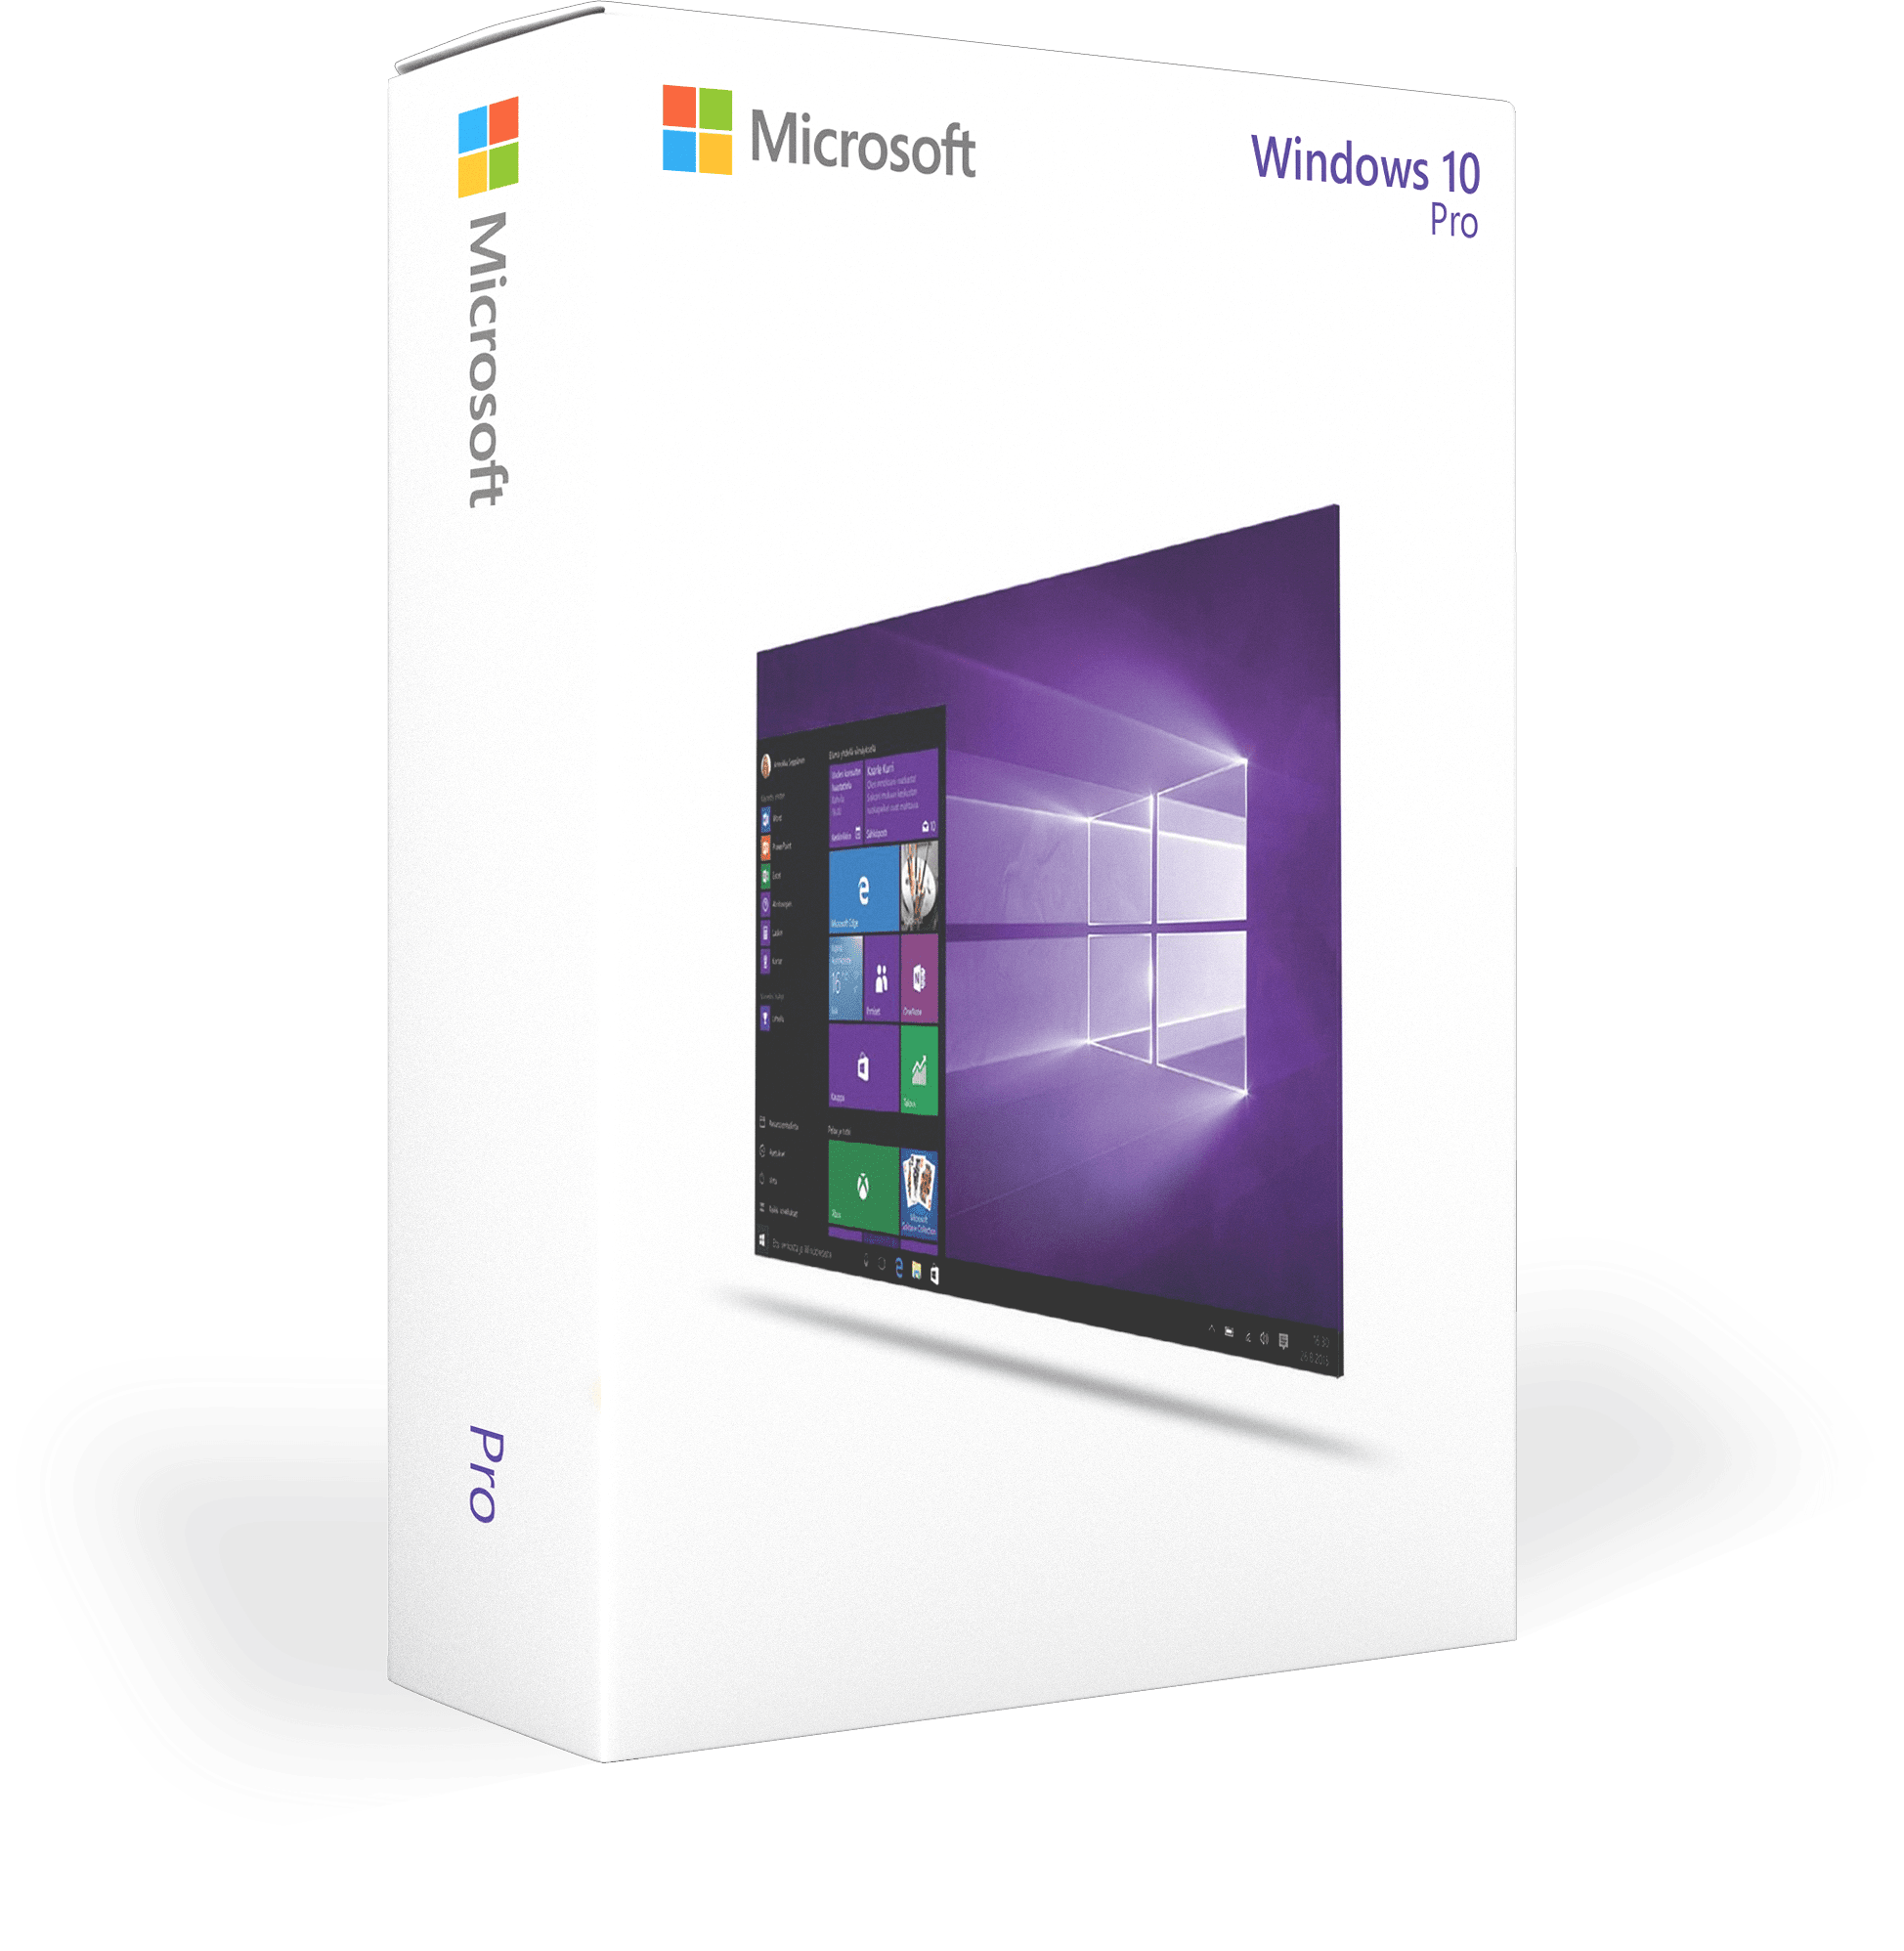 Windows 10 licentie kopen? Productlicenties.nl!